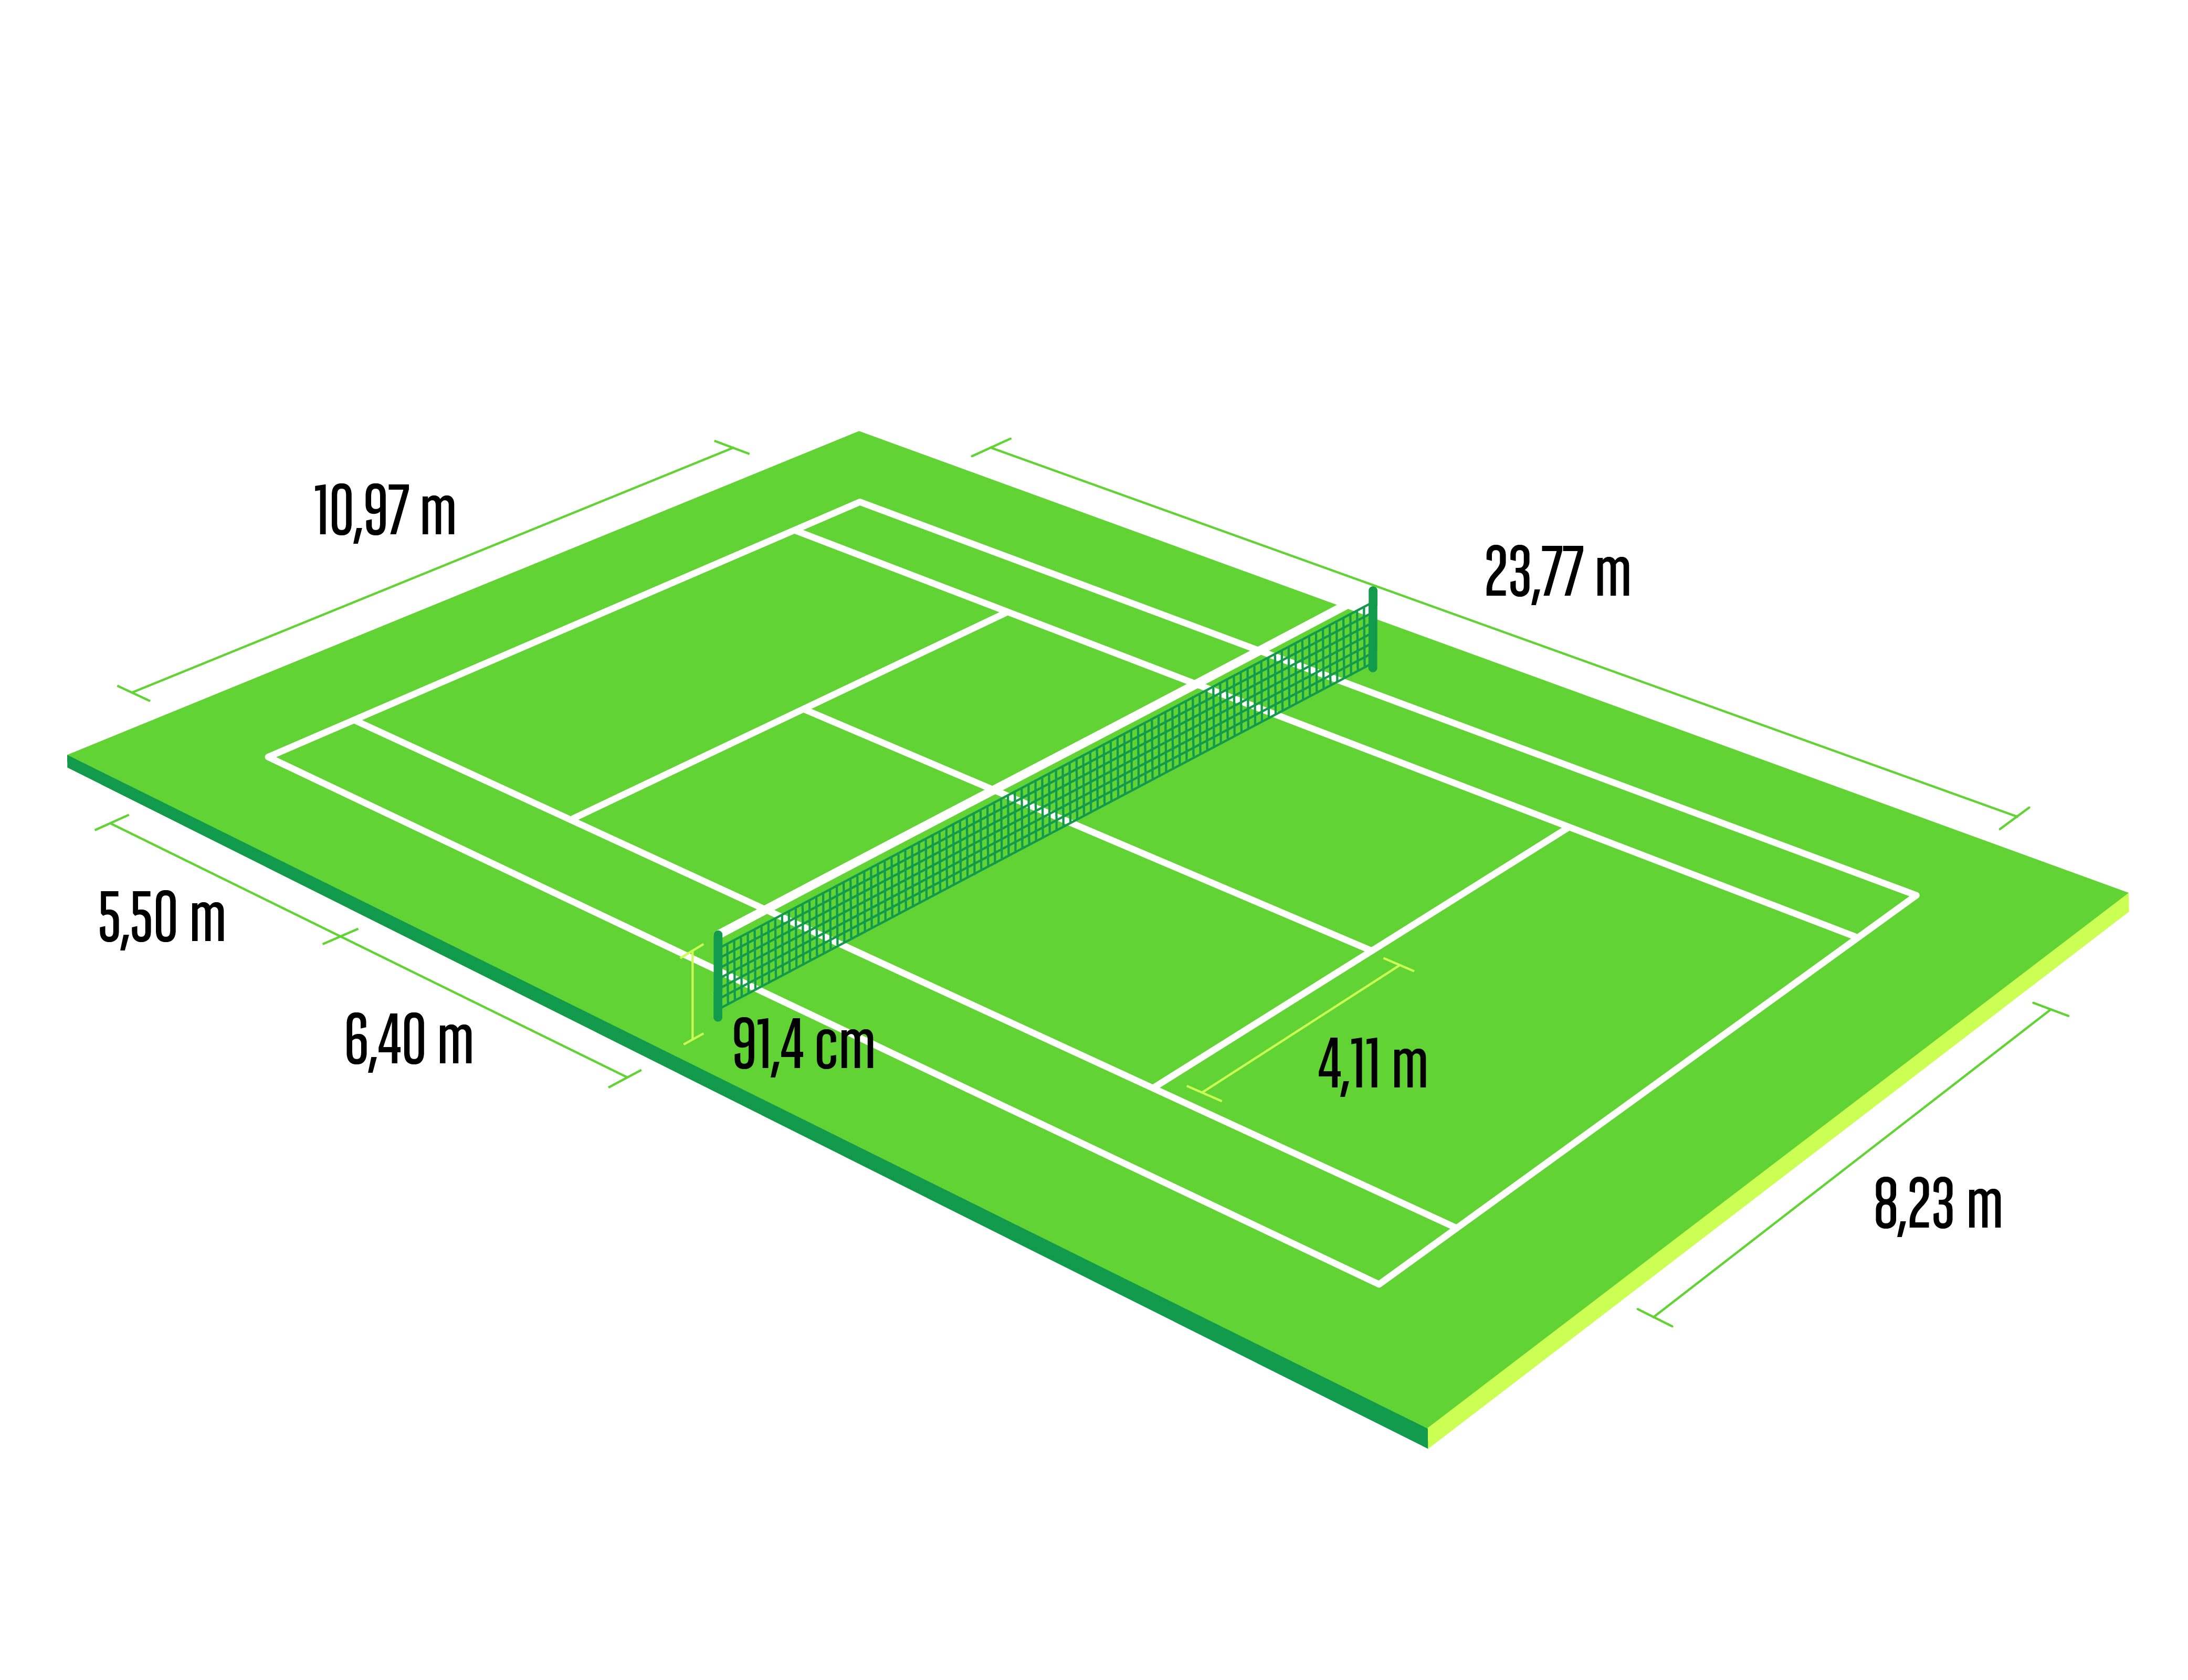 Parolier Nuit Désillusion mini tennis court dimensions in meters